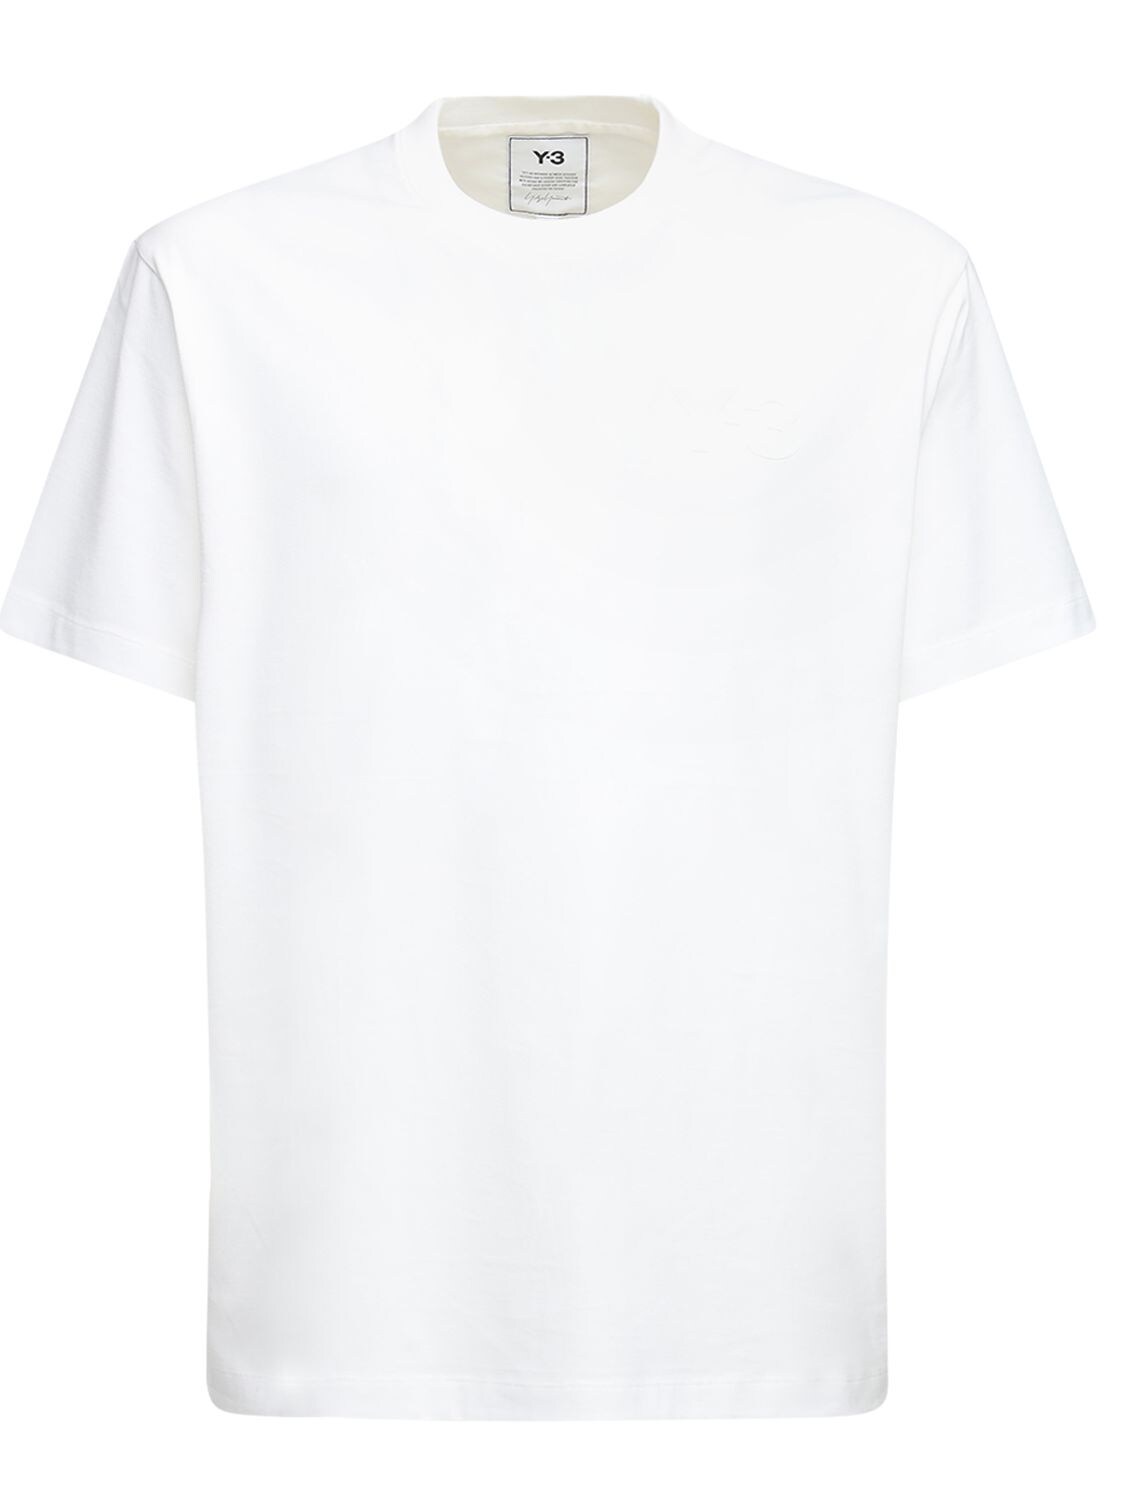 Logo Cotton Jersey T-shirt